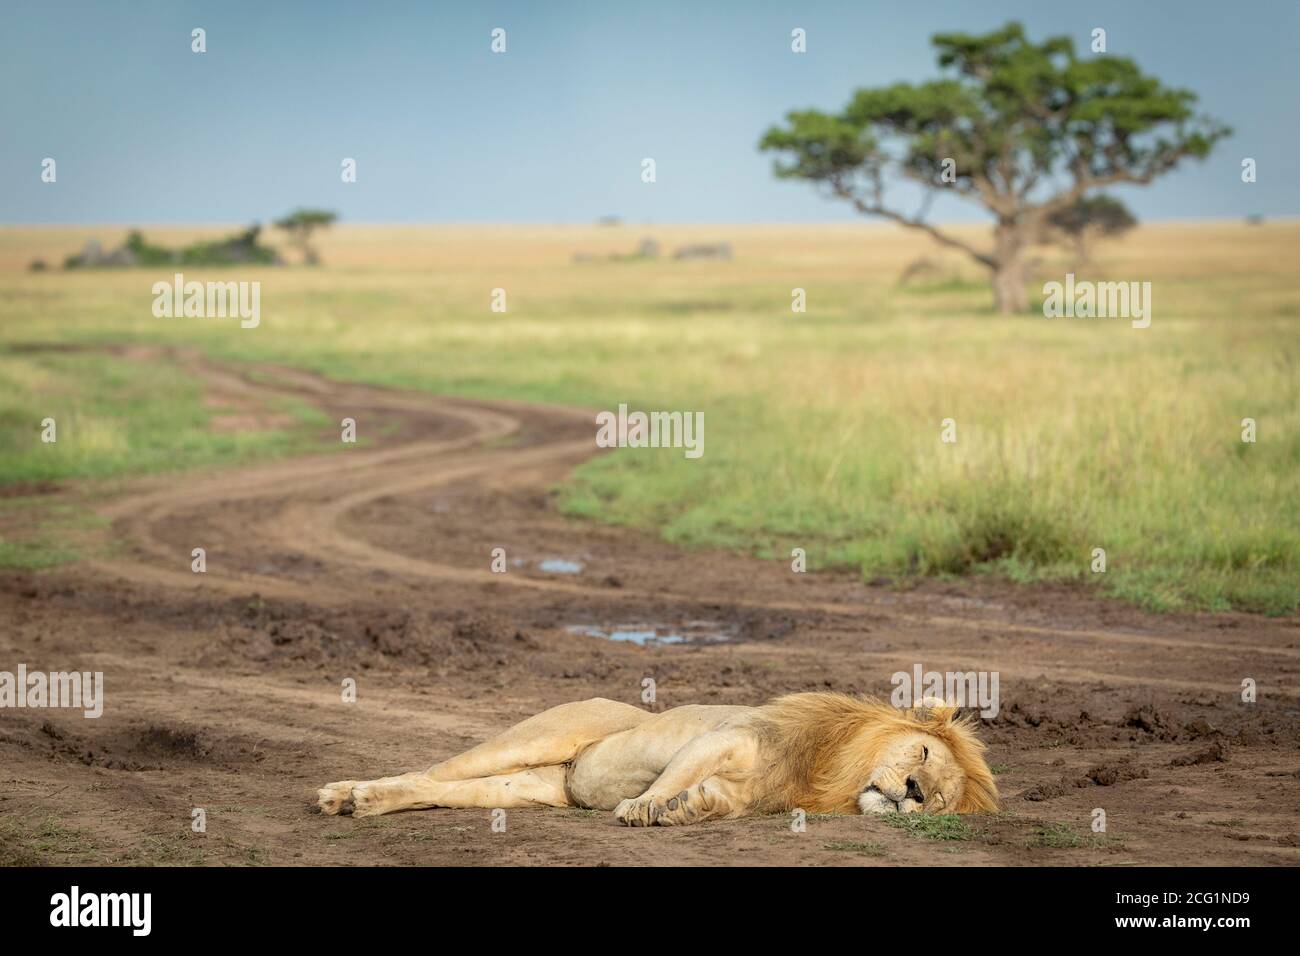 Horizontale Landschaft mit männlichem Löwen, der auf der Straße liegt Im Vordergrund in der Serengeti in Tansania Stockfoto